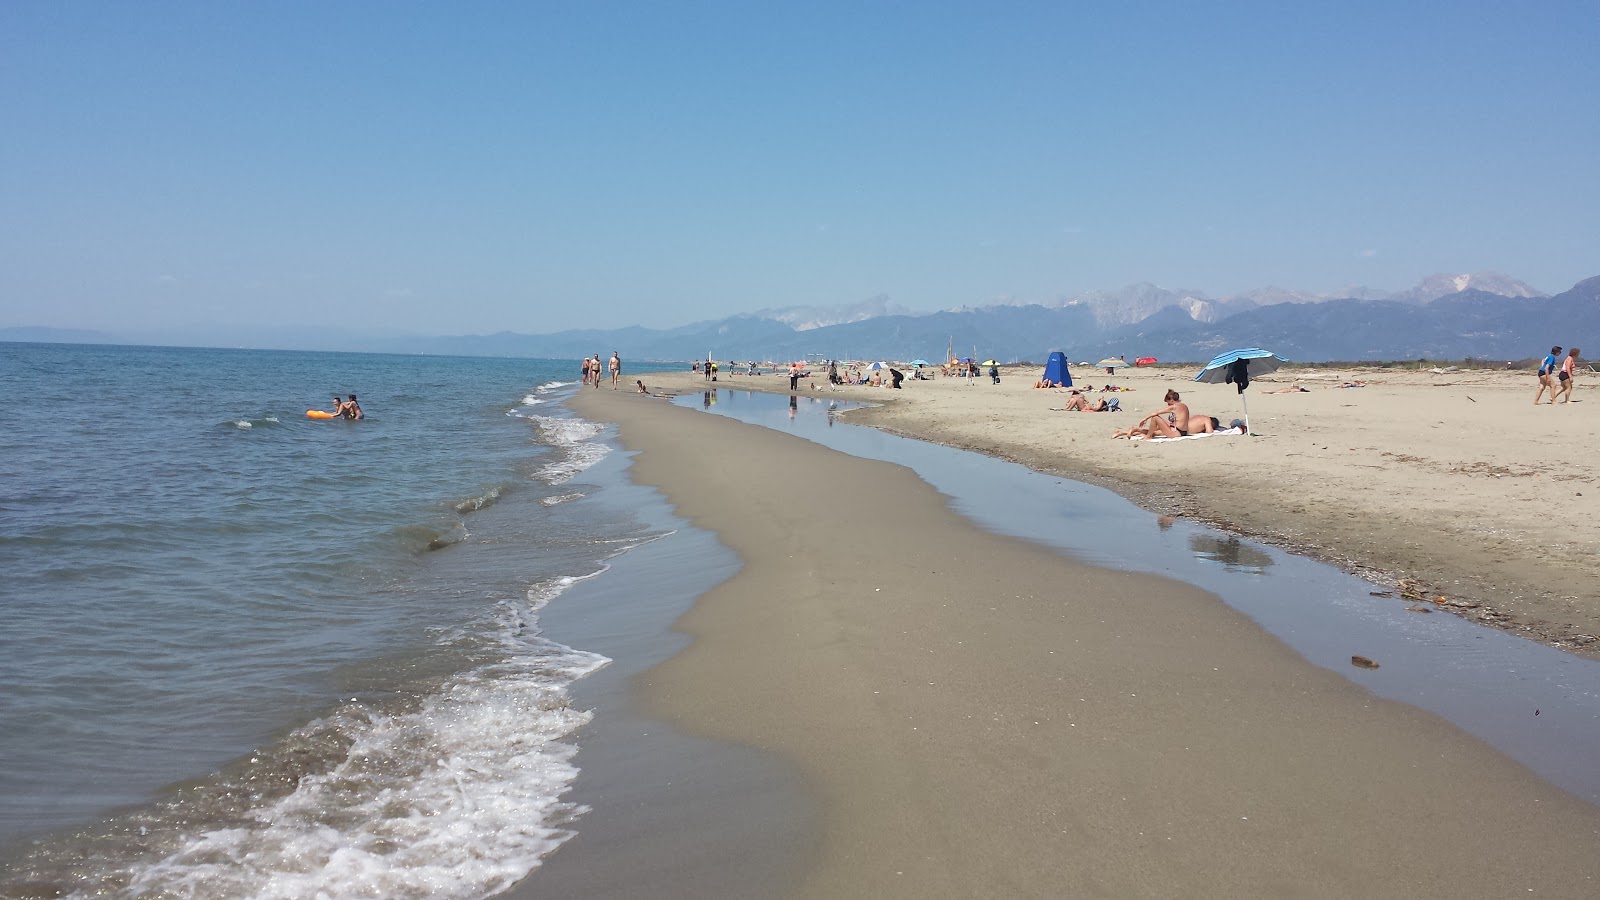 Photo of Spiaggia della Lecciona with blue water surface